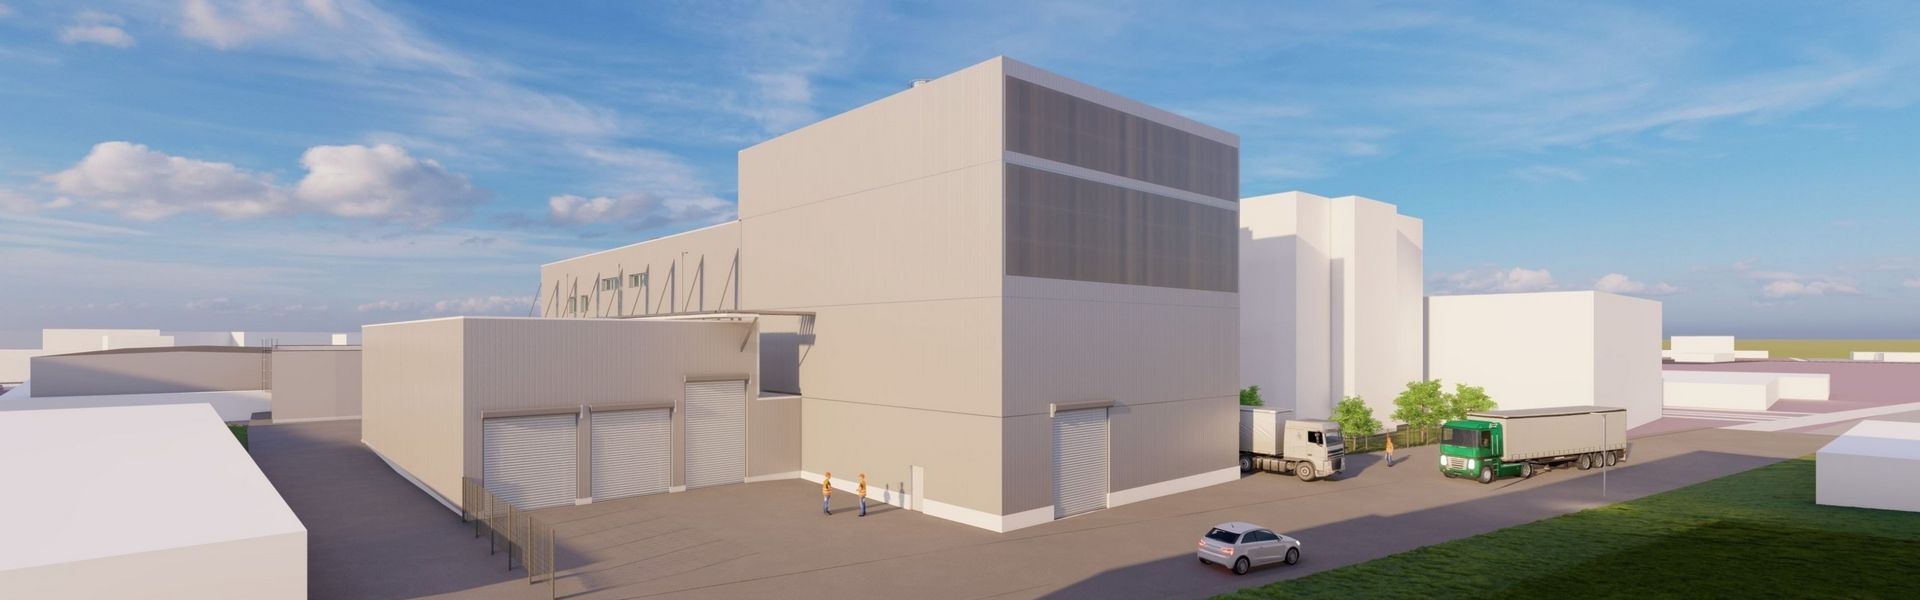 SYSTEAMBAU realisiert den Neubau für das Biomasse-Kesselhaus der Firma Finzelberg in Andernach/RLP